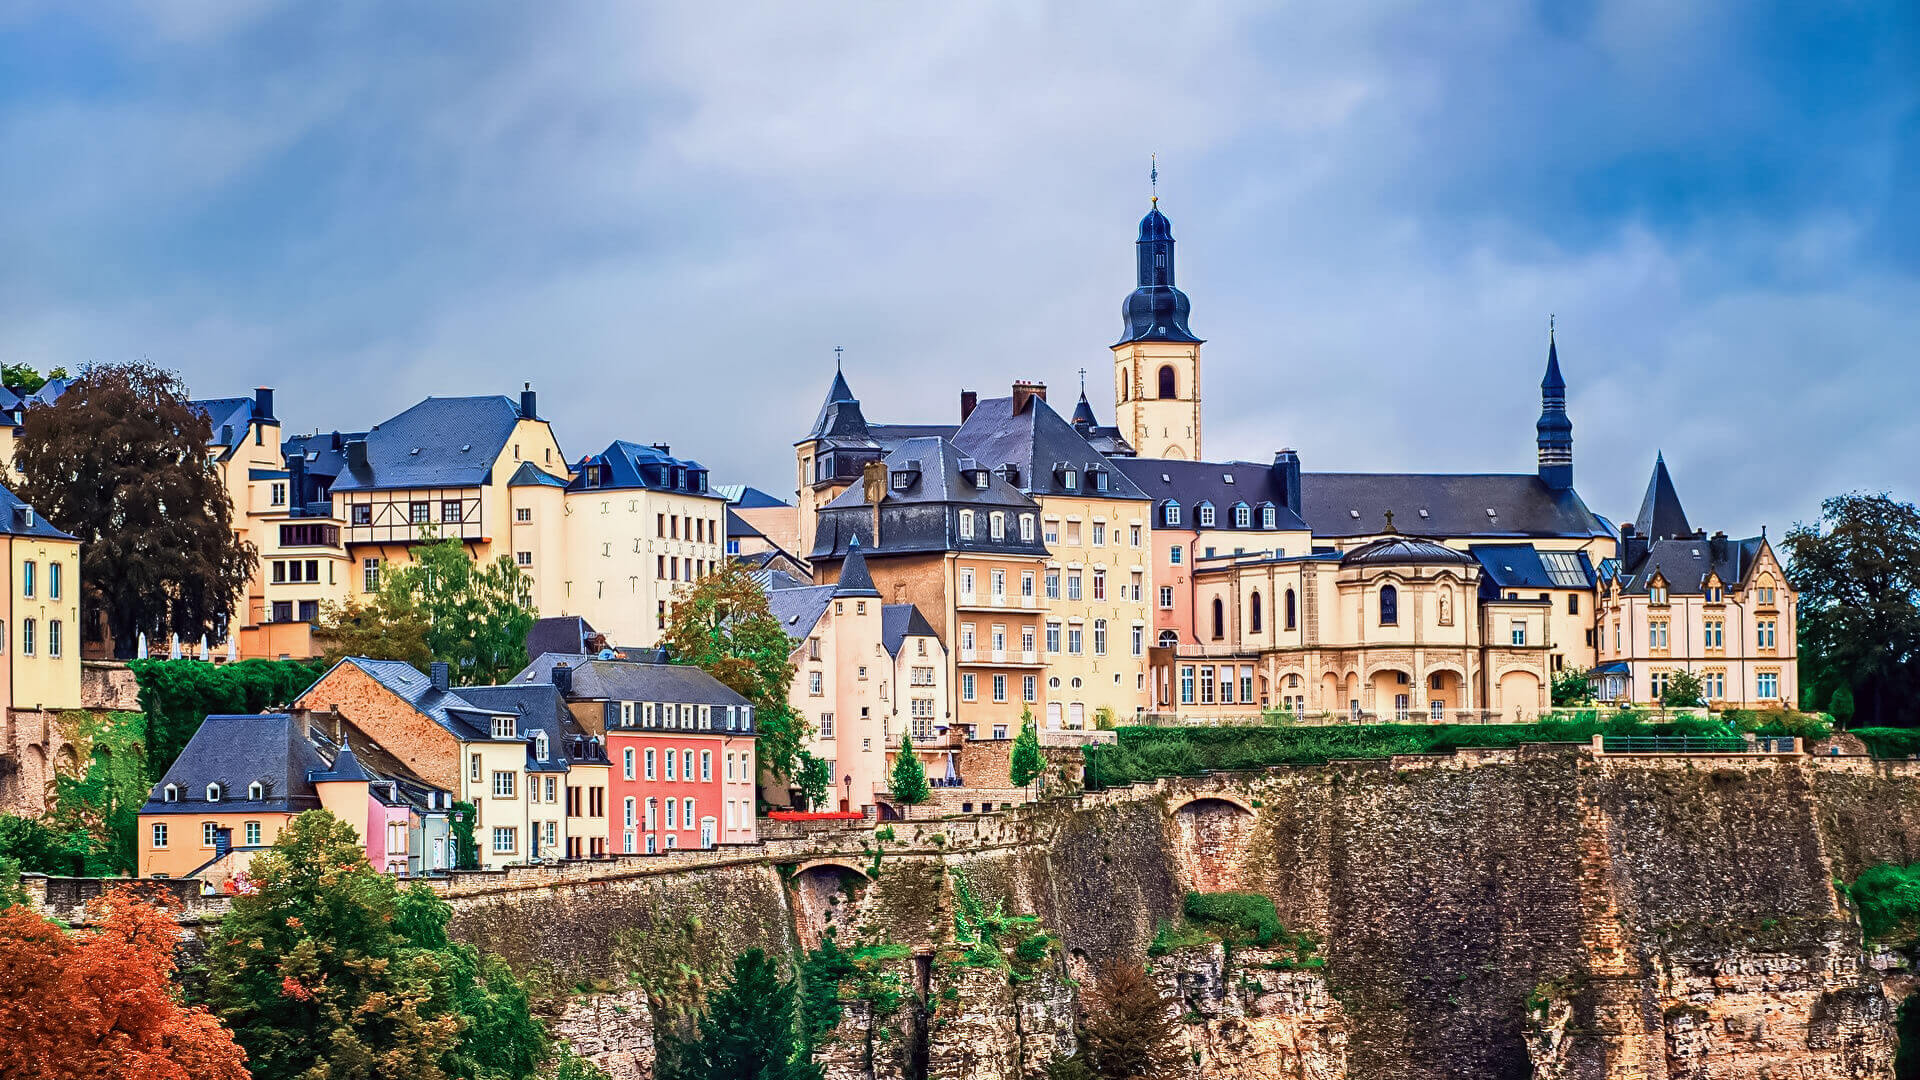 Luxembourg rejseguide - Travel S hjælper